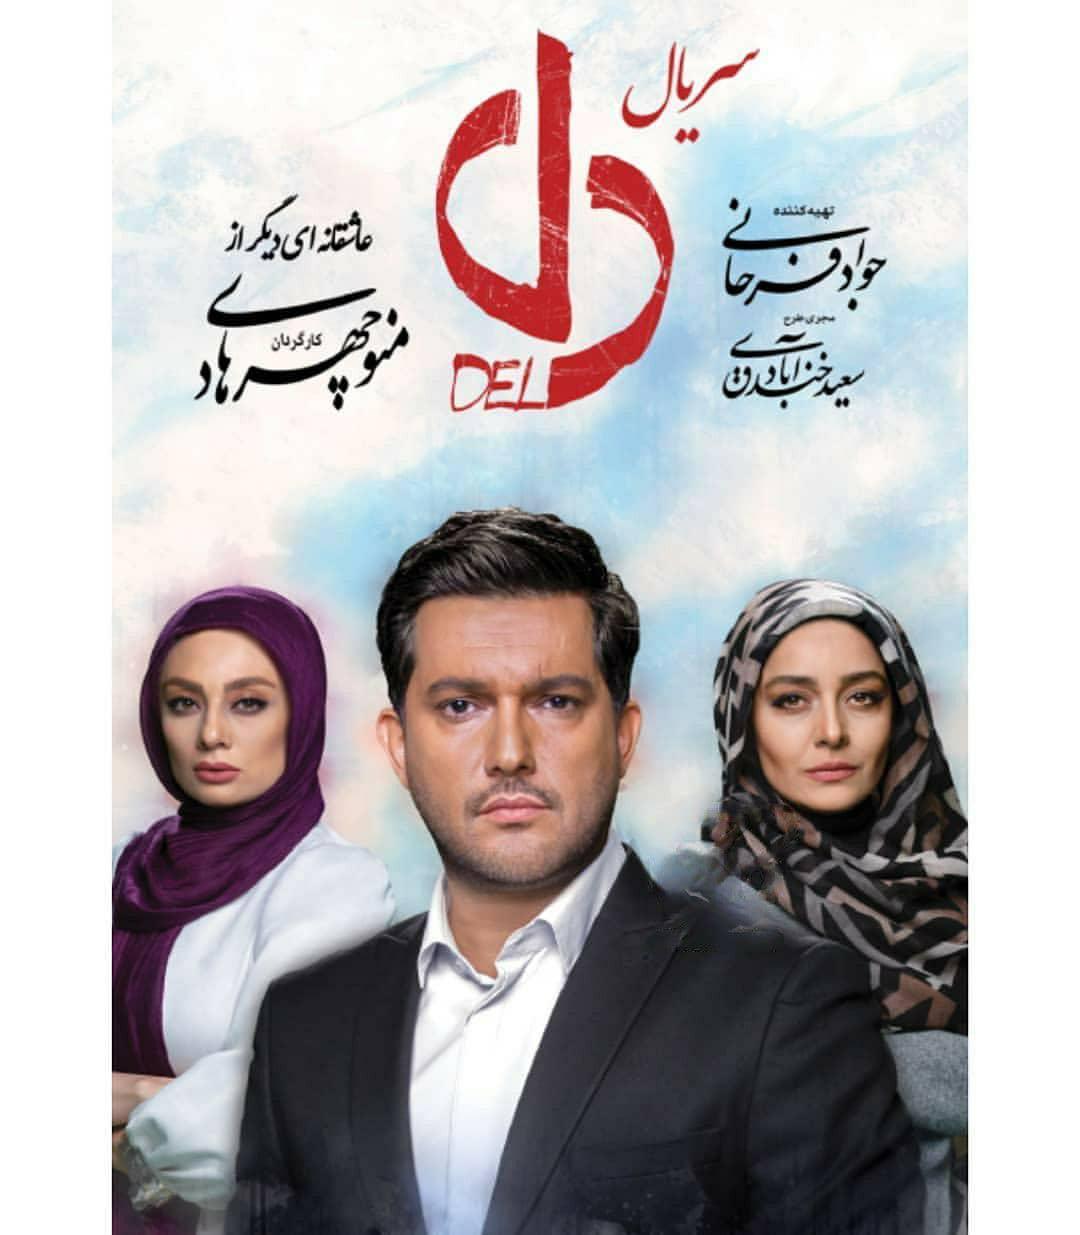 حامد بهداد در صحنه سریال شبکه نمایش خانگی دل به همراه ساره بیات و یکتا ناصر